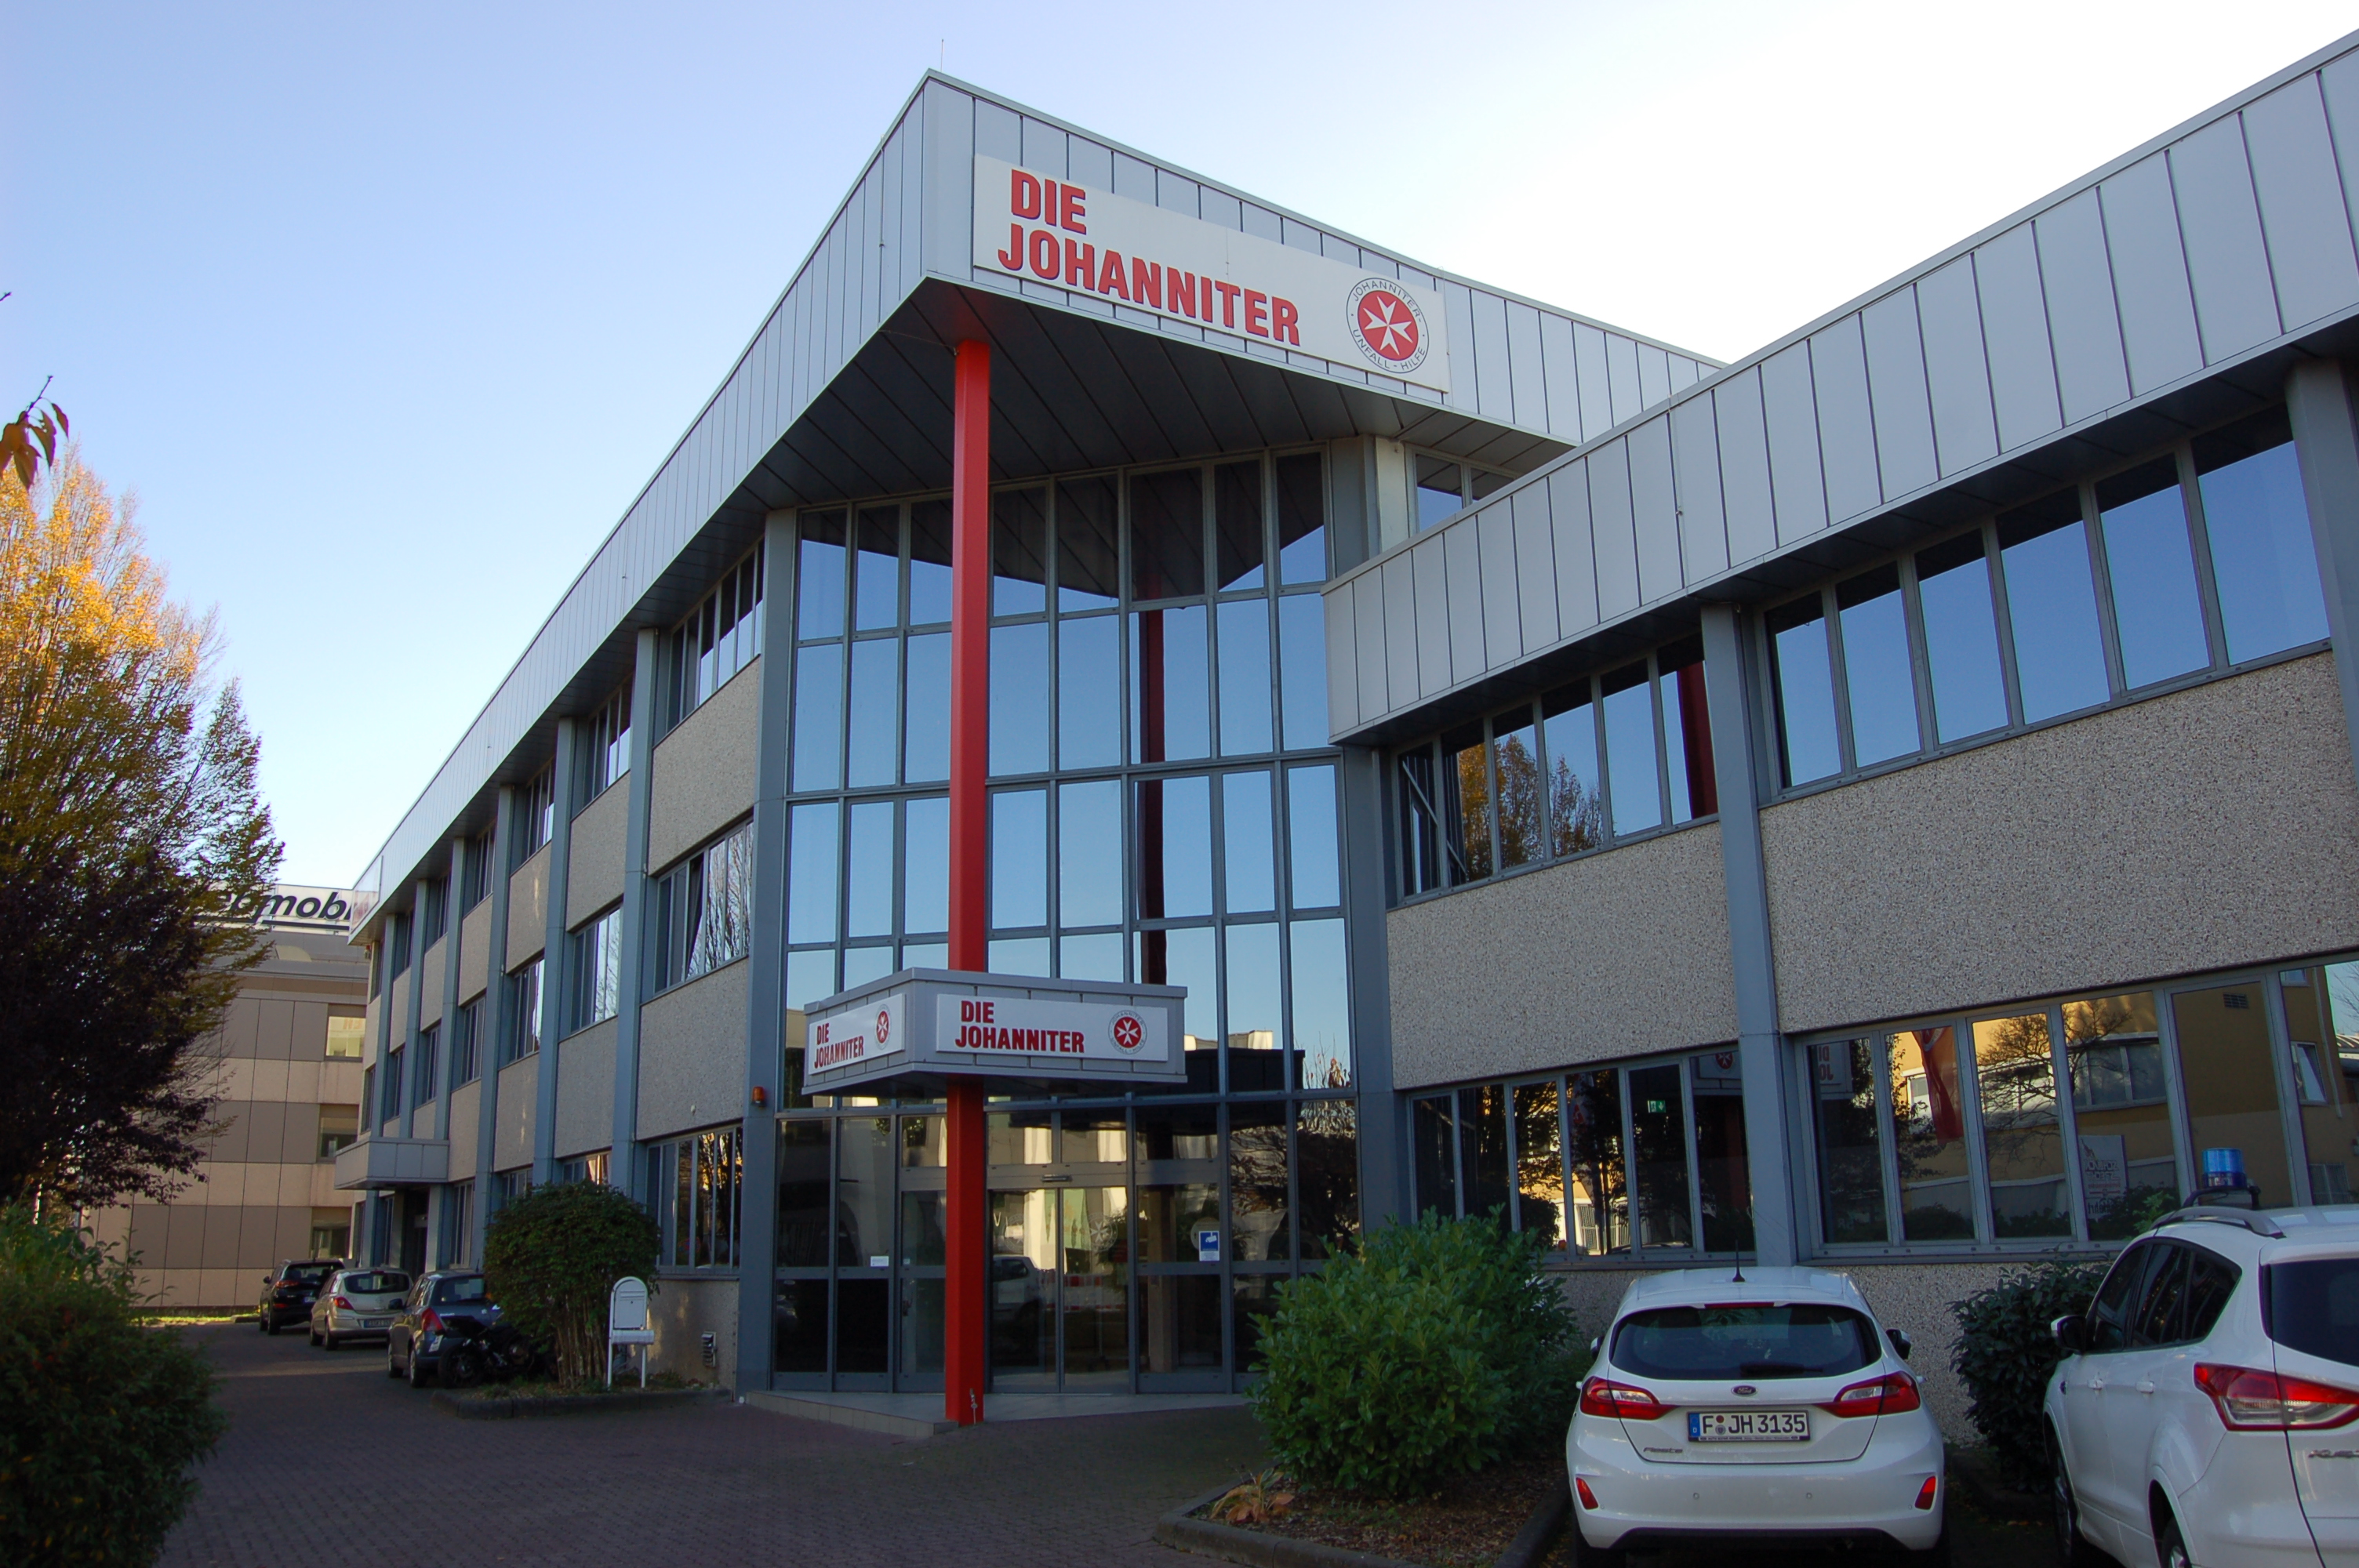 Bild 1 Johanniter-Unfall-Hilfe e.V. - Geschäftsstelle Frankfurt am Main in Frankfurt am Main